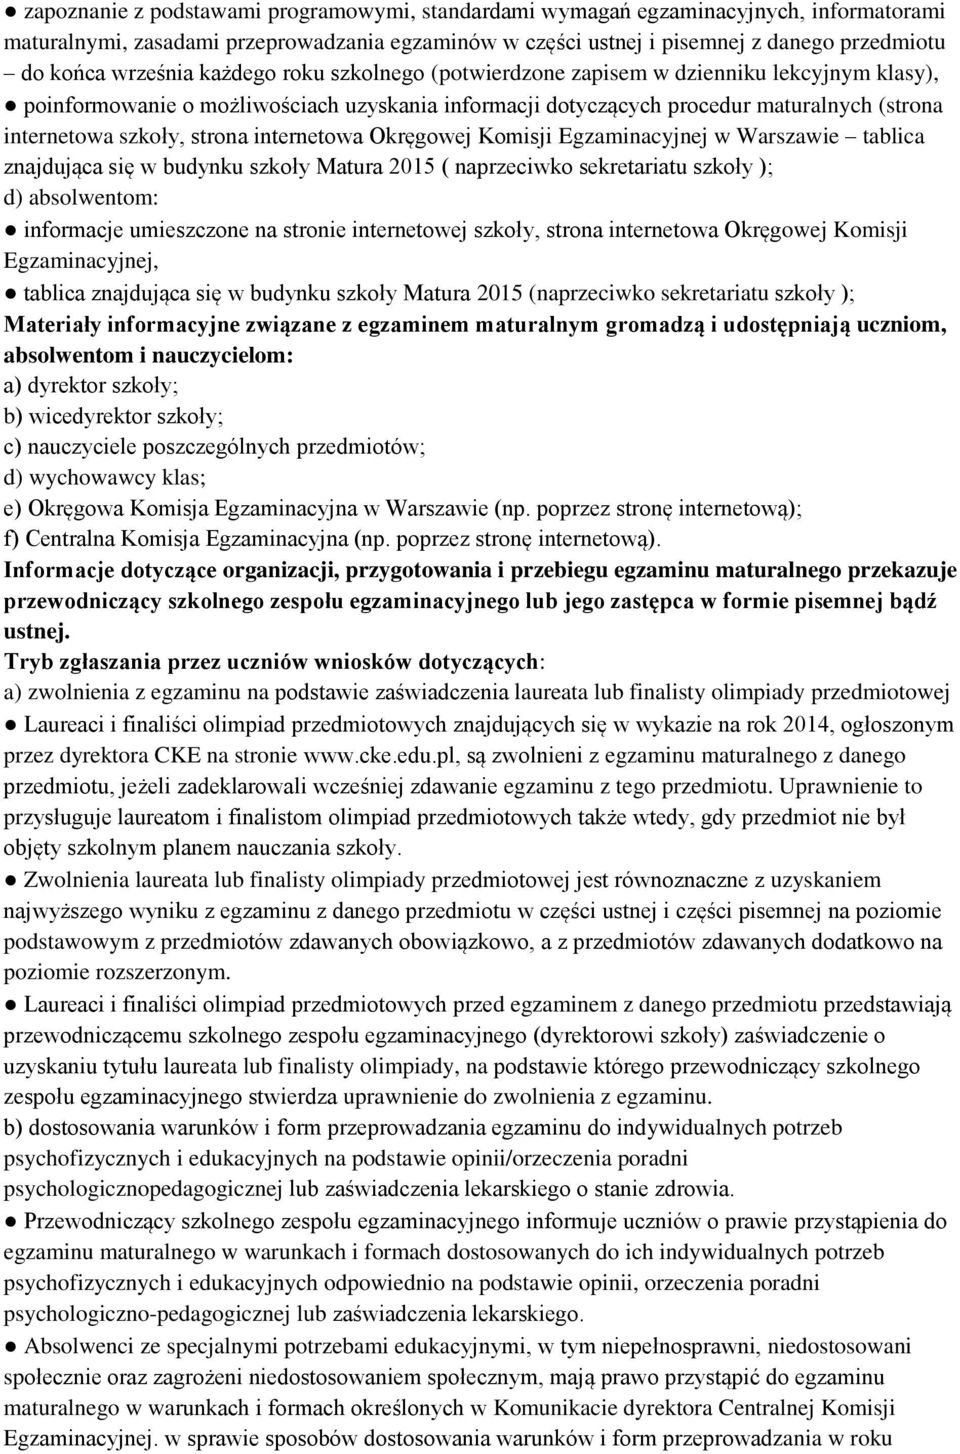 strona internetowa Okręgowej Komisji Egzaminacyjnej w Warszawie tablica znajdująca się w budynku szkoły Matura 2015 ( naprzeciwko sekretariatu szkoły ); d) absolwentom: informacje umieszczone na